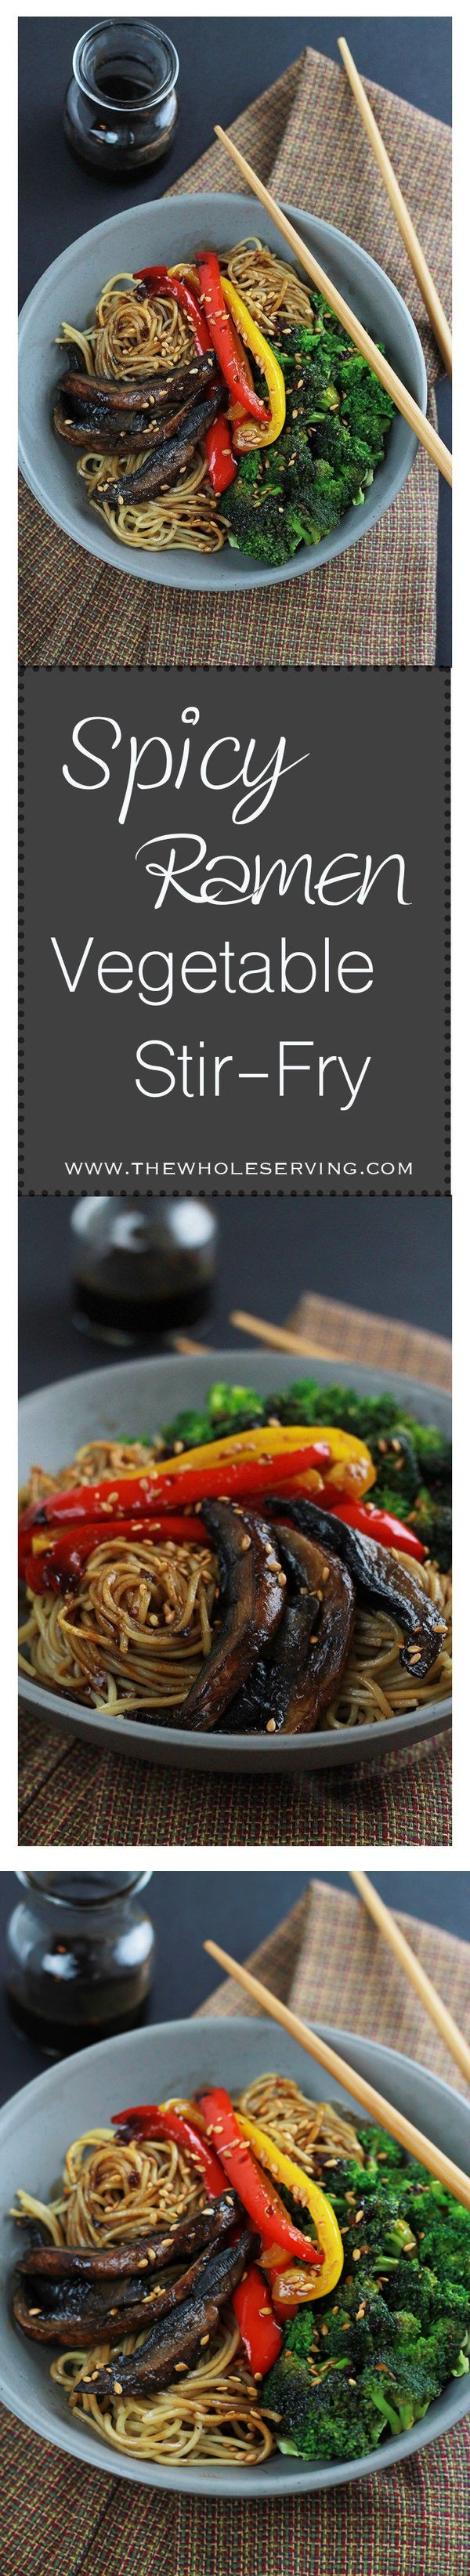 Spicy Ramen Mushroom Stir-Fry